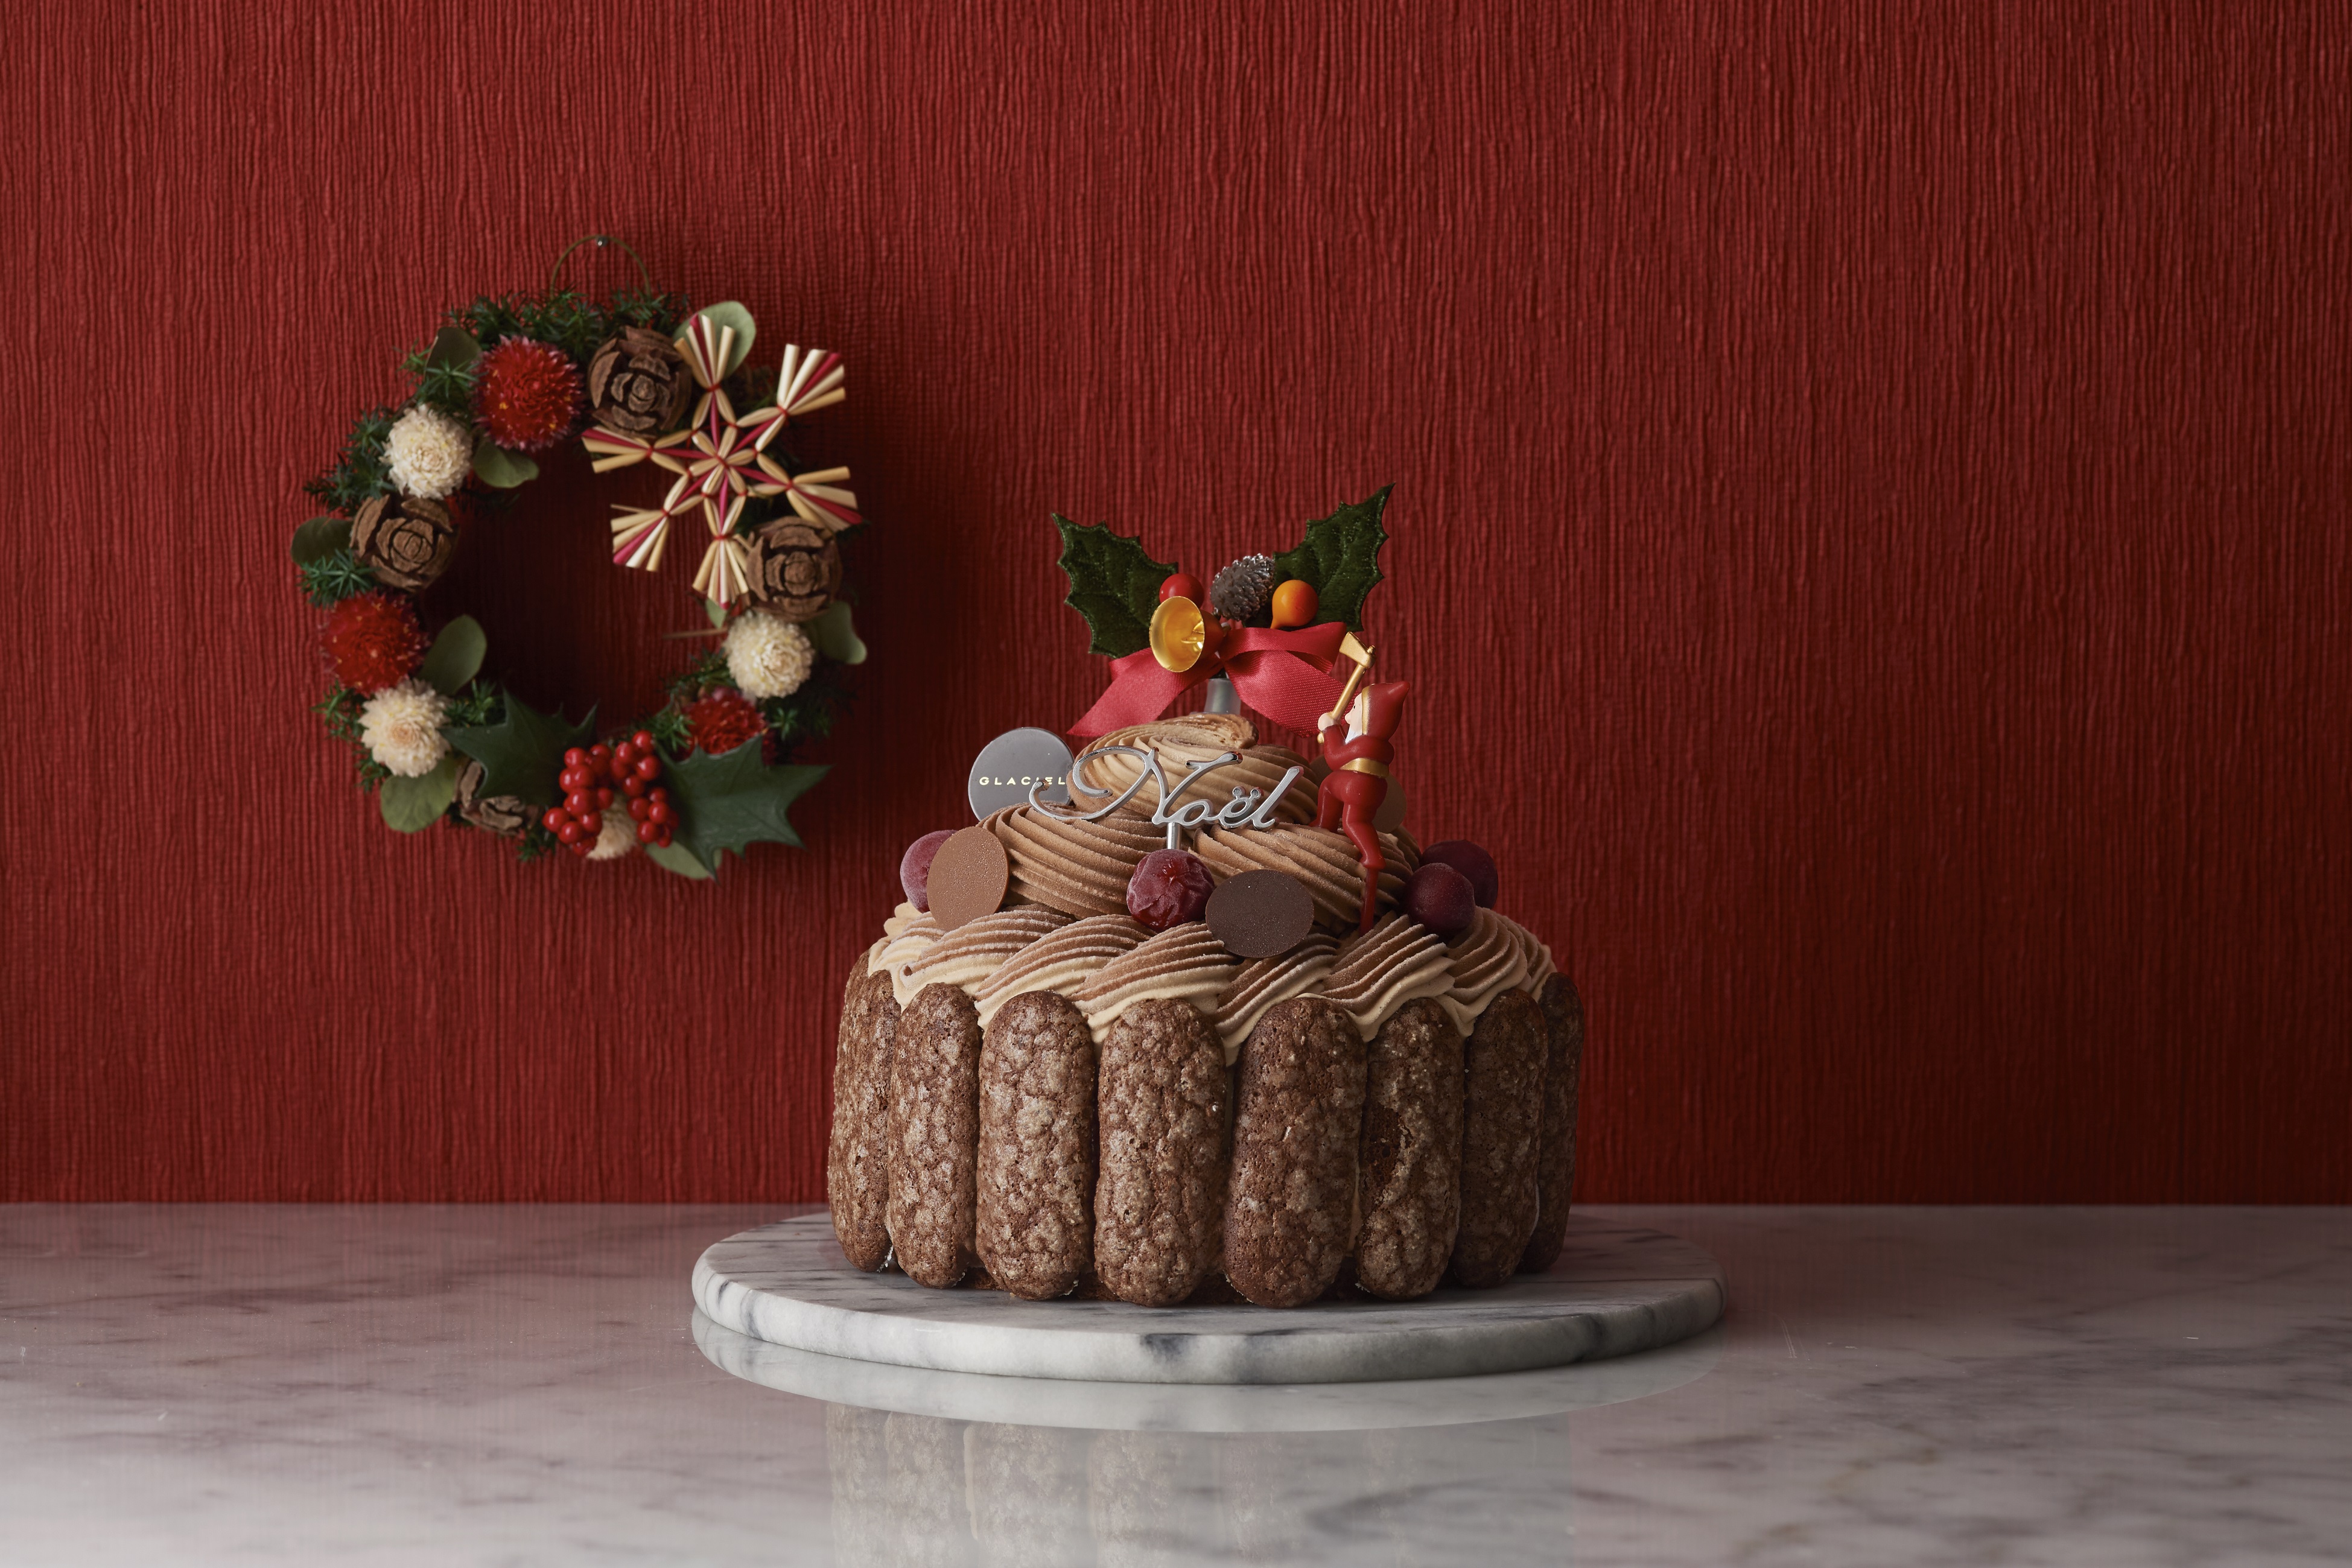 アントルメグラッセ 生グラス専門店 Glaciel グラッシェル より 16年クリスマスケーキのご案内 株式会社ケイシイシイのプレスリリース